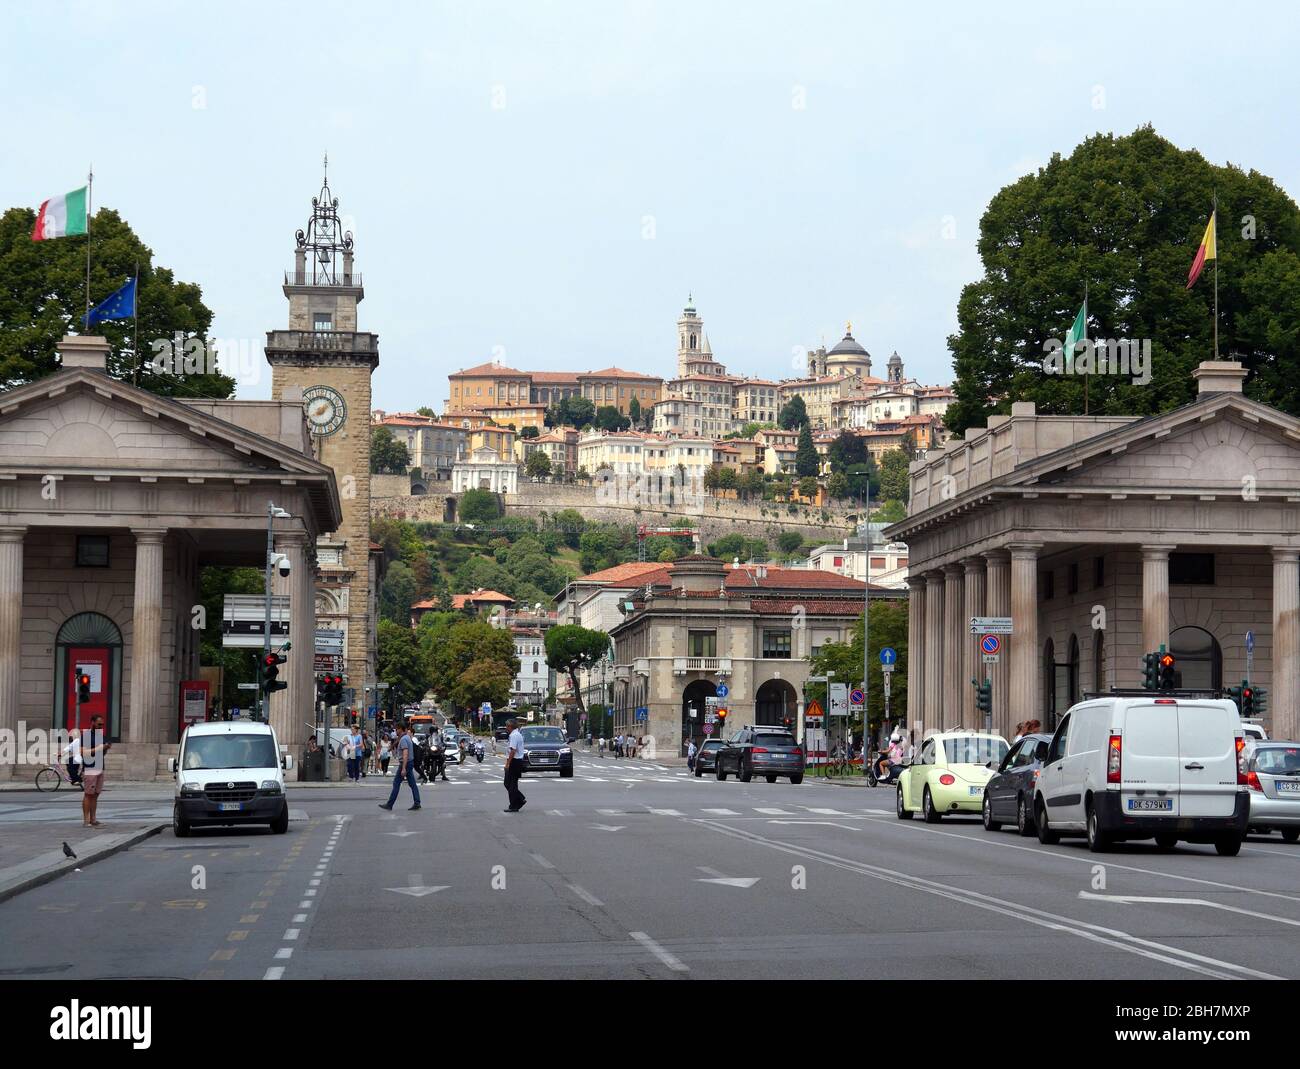 Bergame, Italie - 06 août 2019: Rues animées dans la partie inférieure de la ville de Bergame avec la ville fortifiée en haut en arrière-plan Banque D'Images